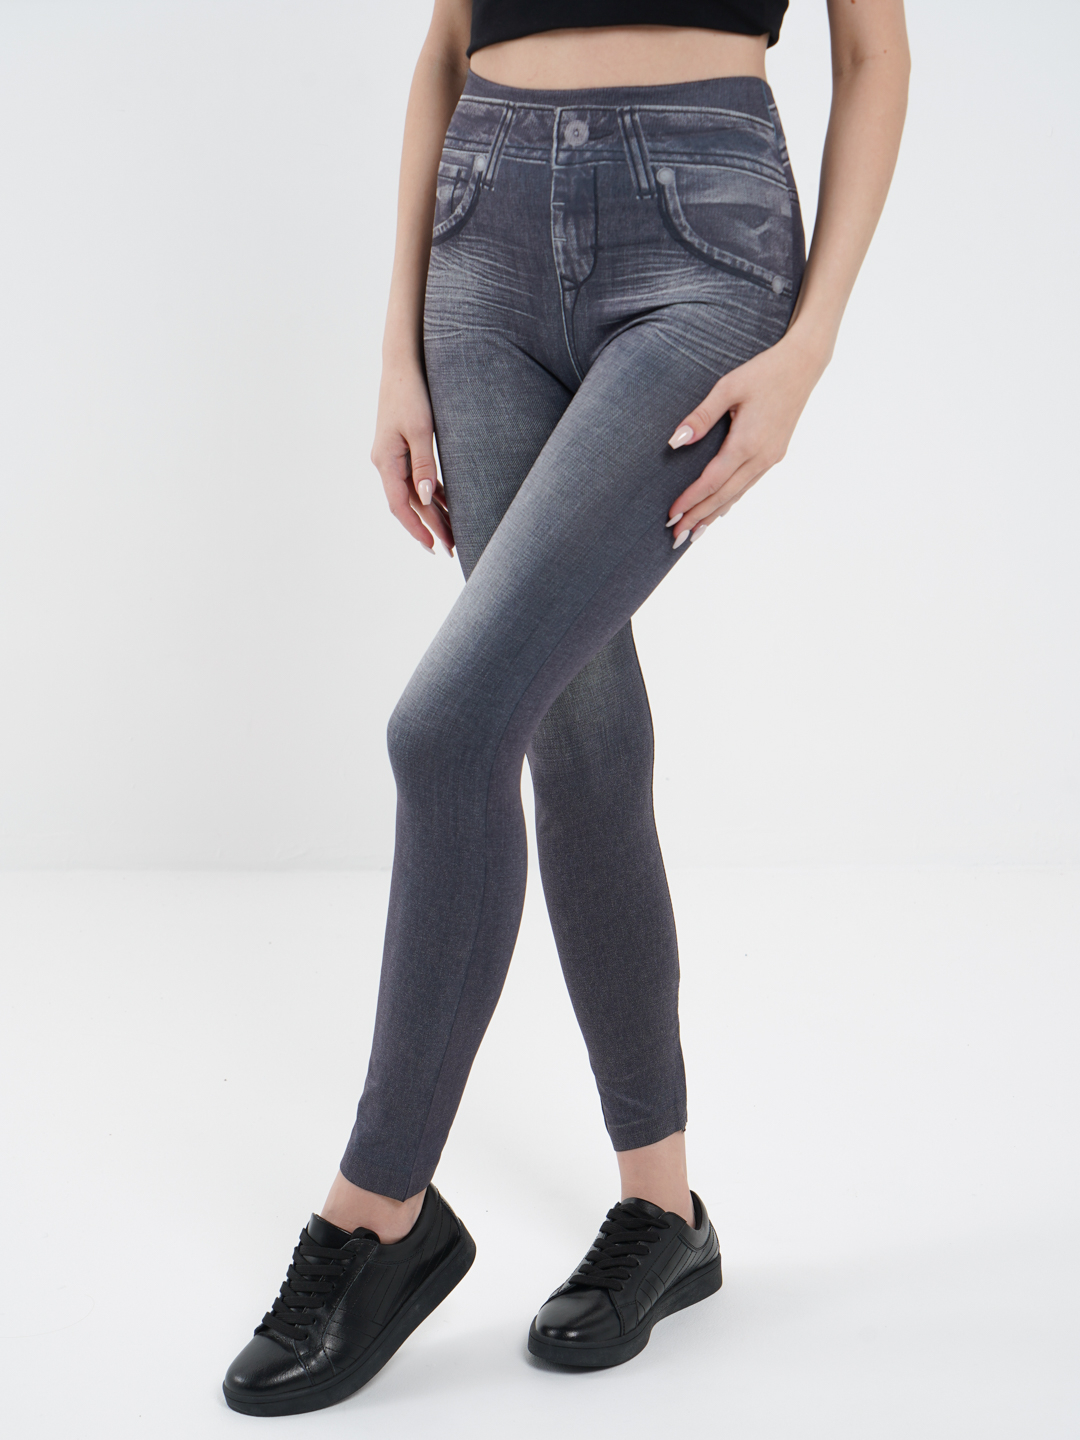 Утягивающие леггинсы под джинсы лосины брюки женские джеггинсы леджинсы легинсыбрюки U126 купить по цене 399 ₽ в интернет-магазине KazanExpress